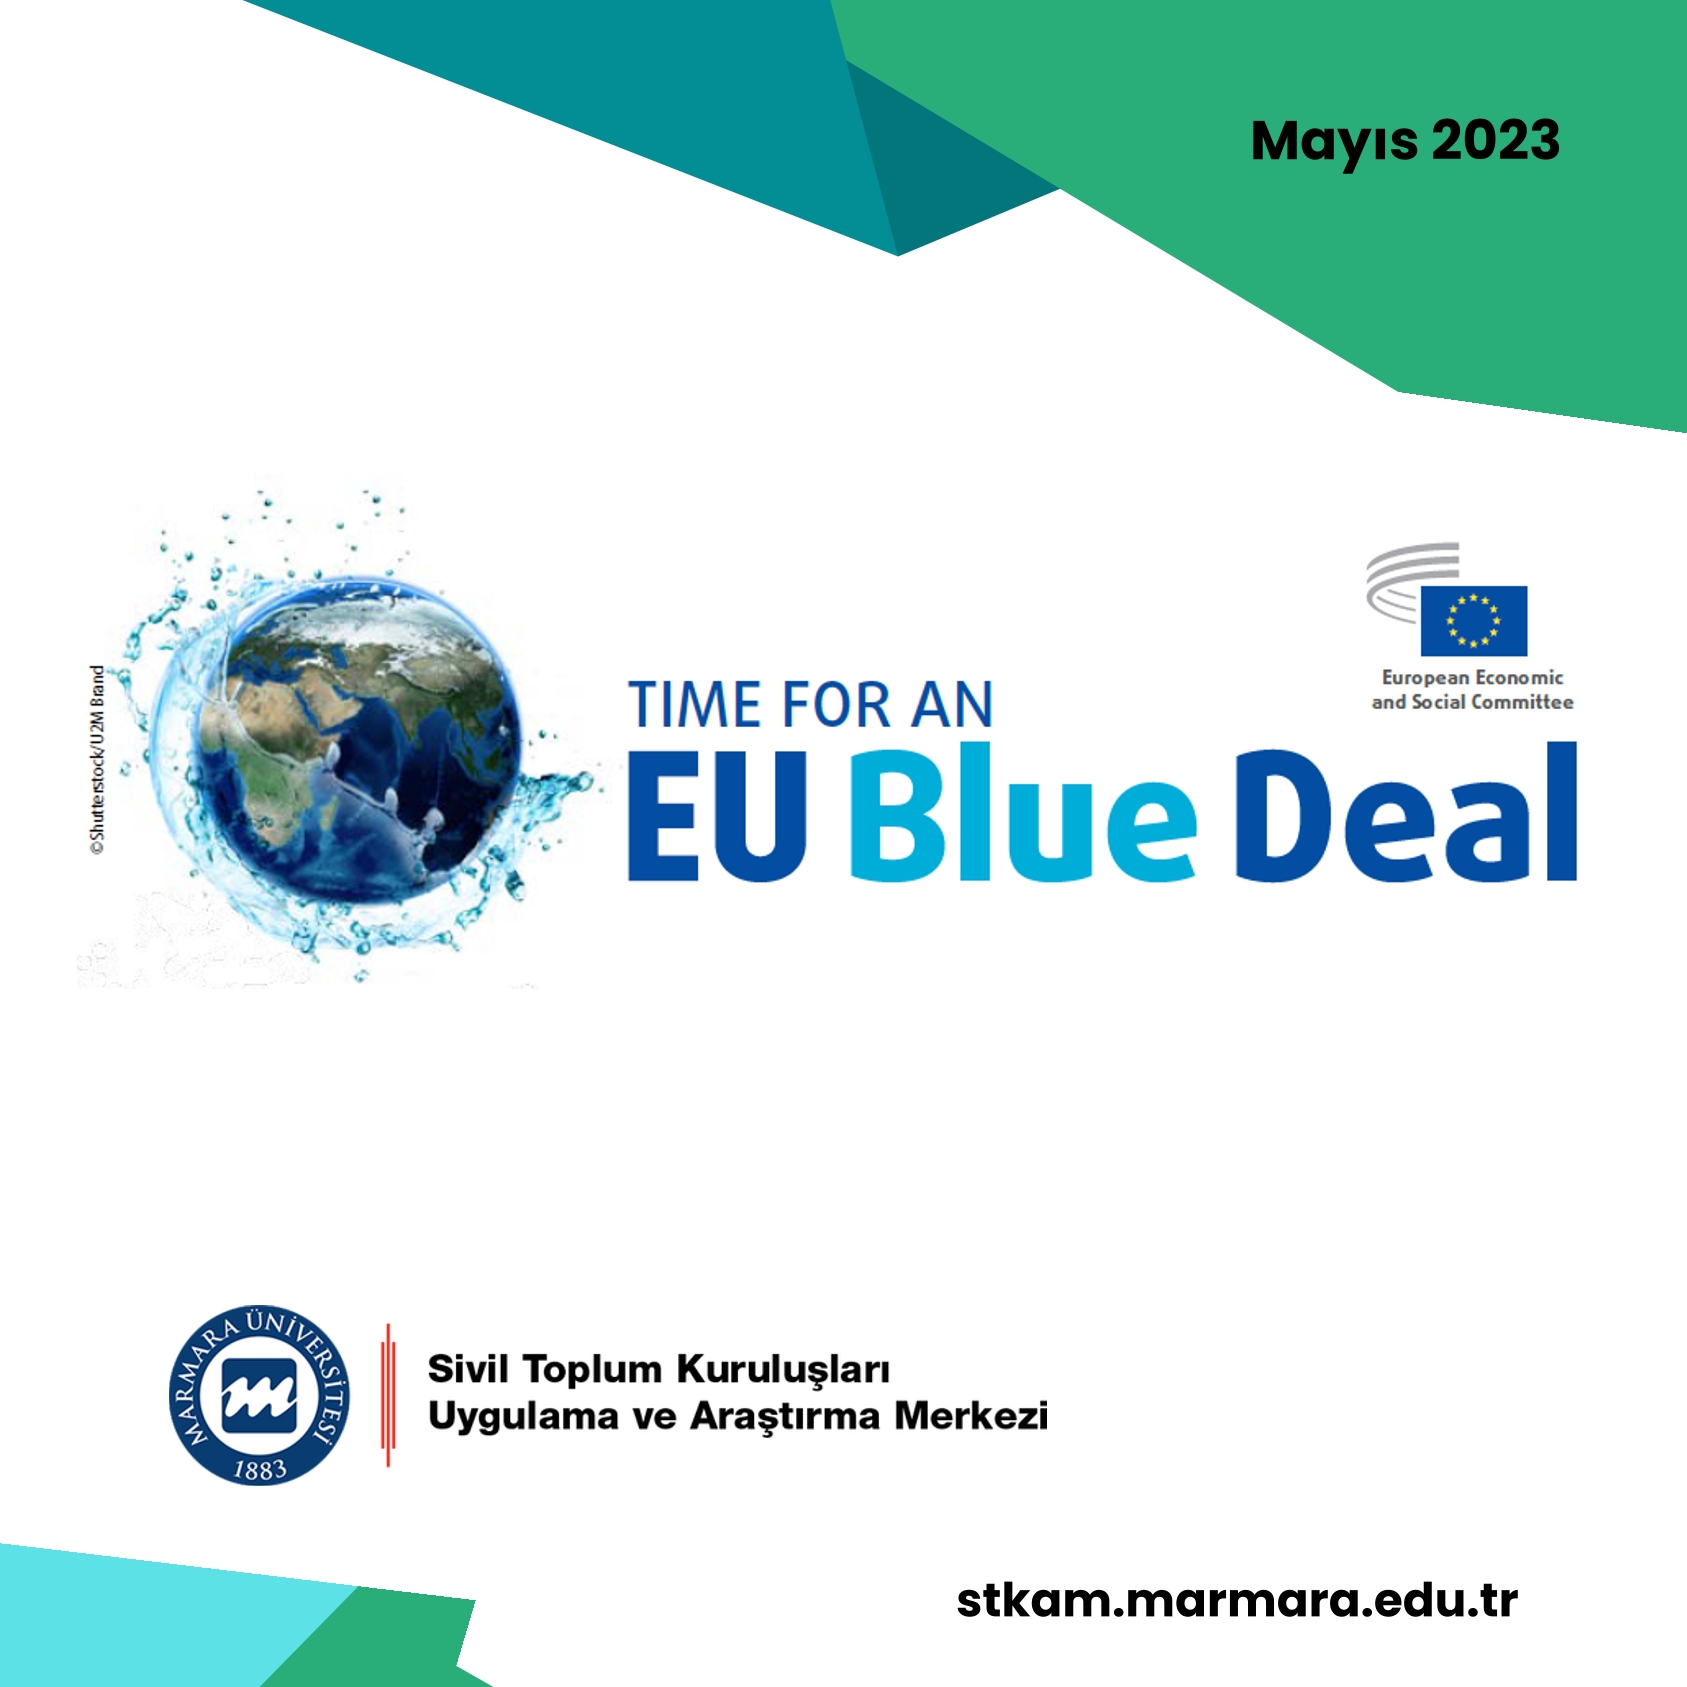 eu-blue-deal-1.jpg (401 KB)